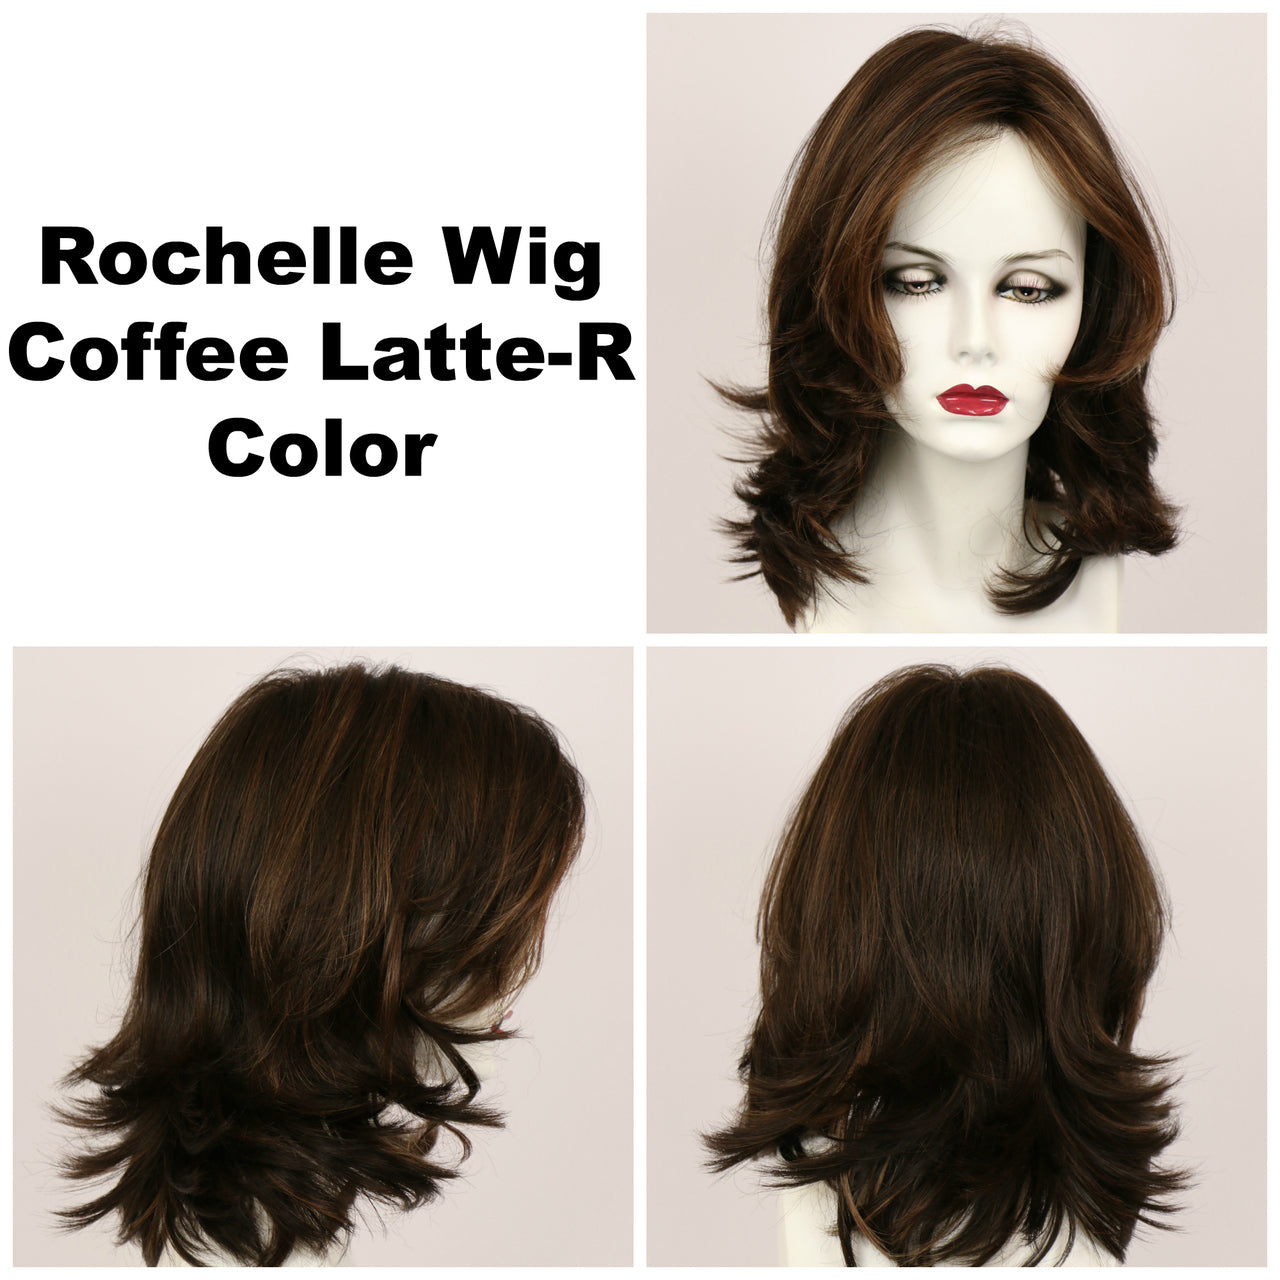 Coffee Latte-R / Rochelle w/ Roots / Long Wig